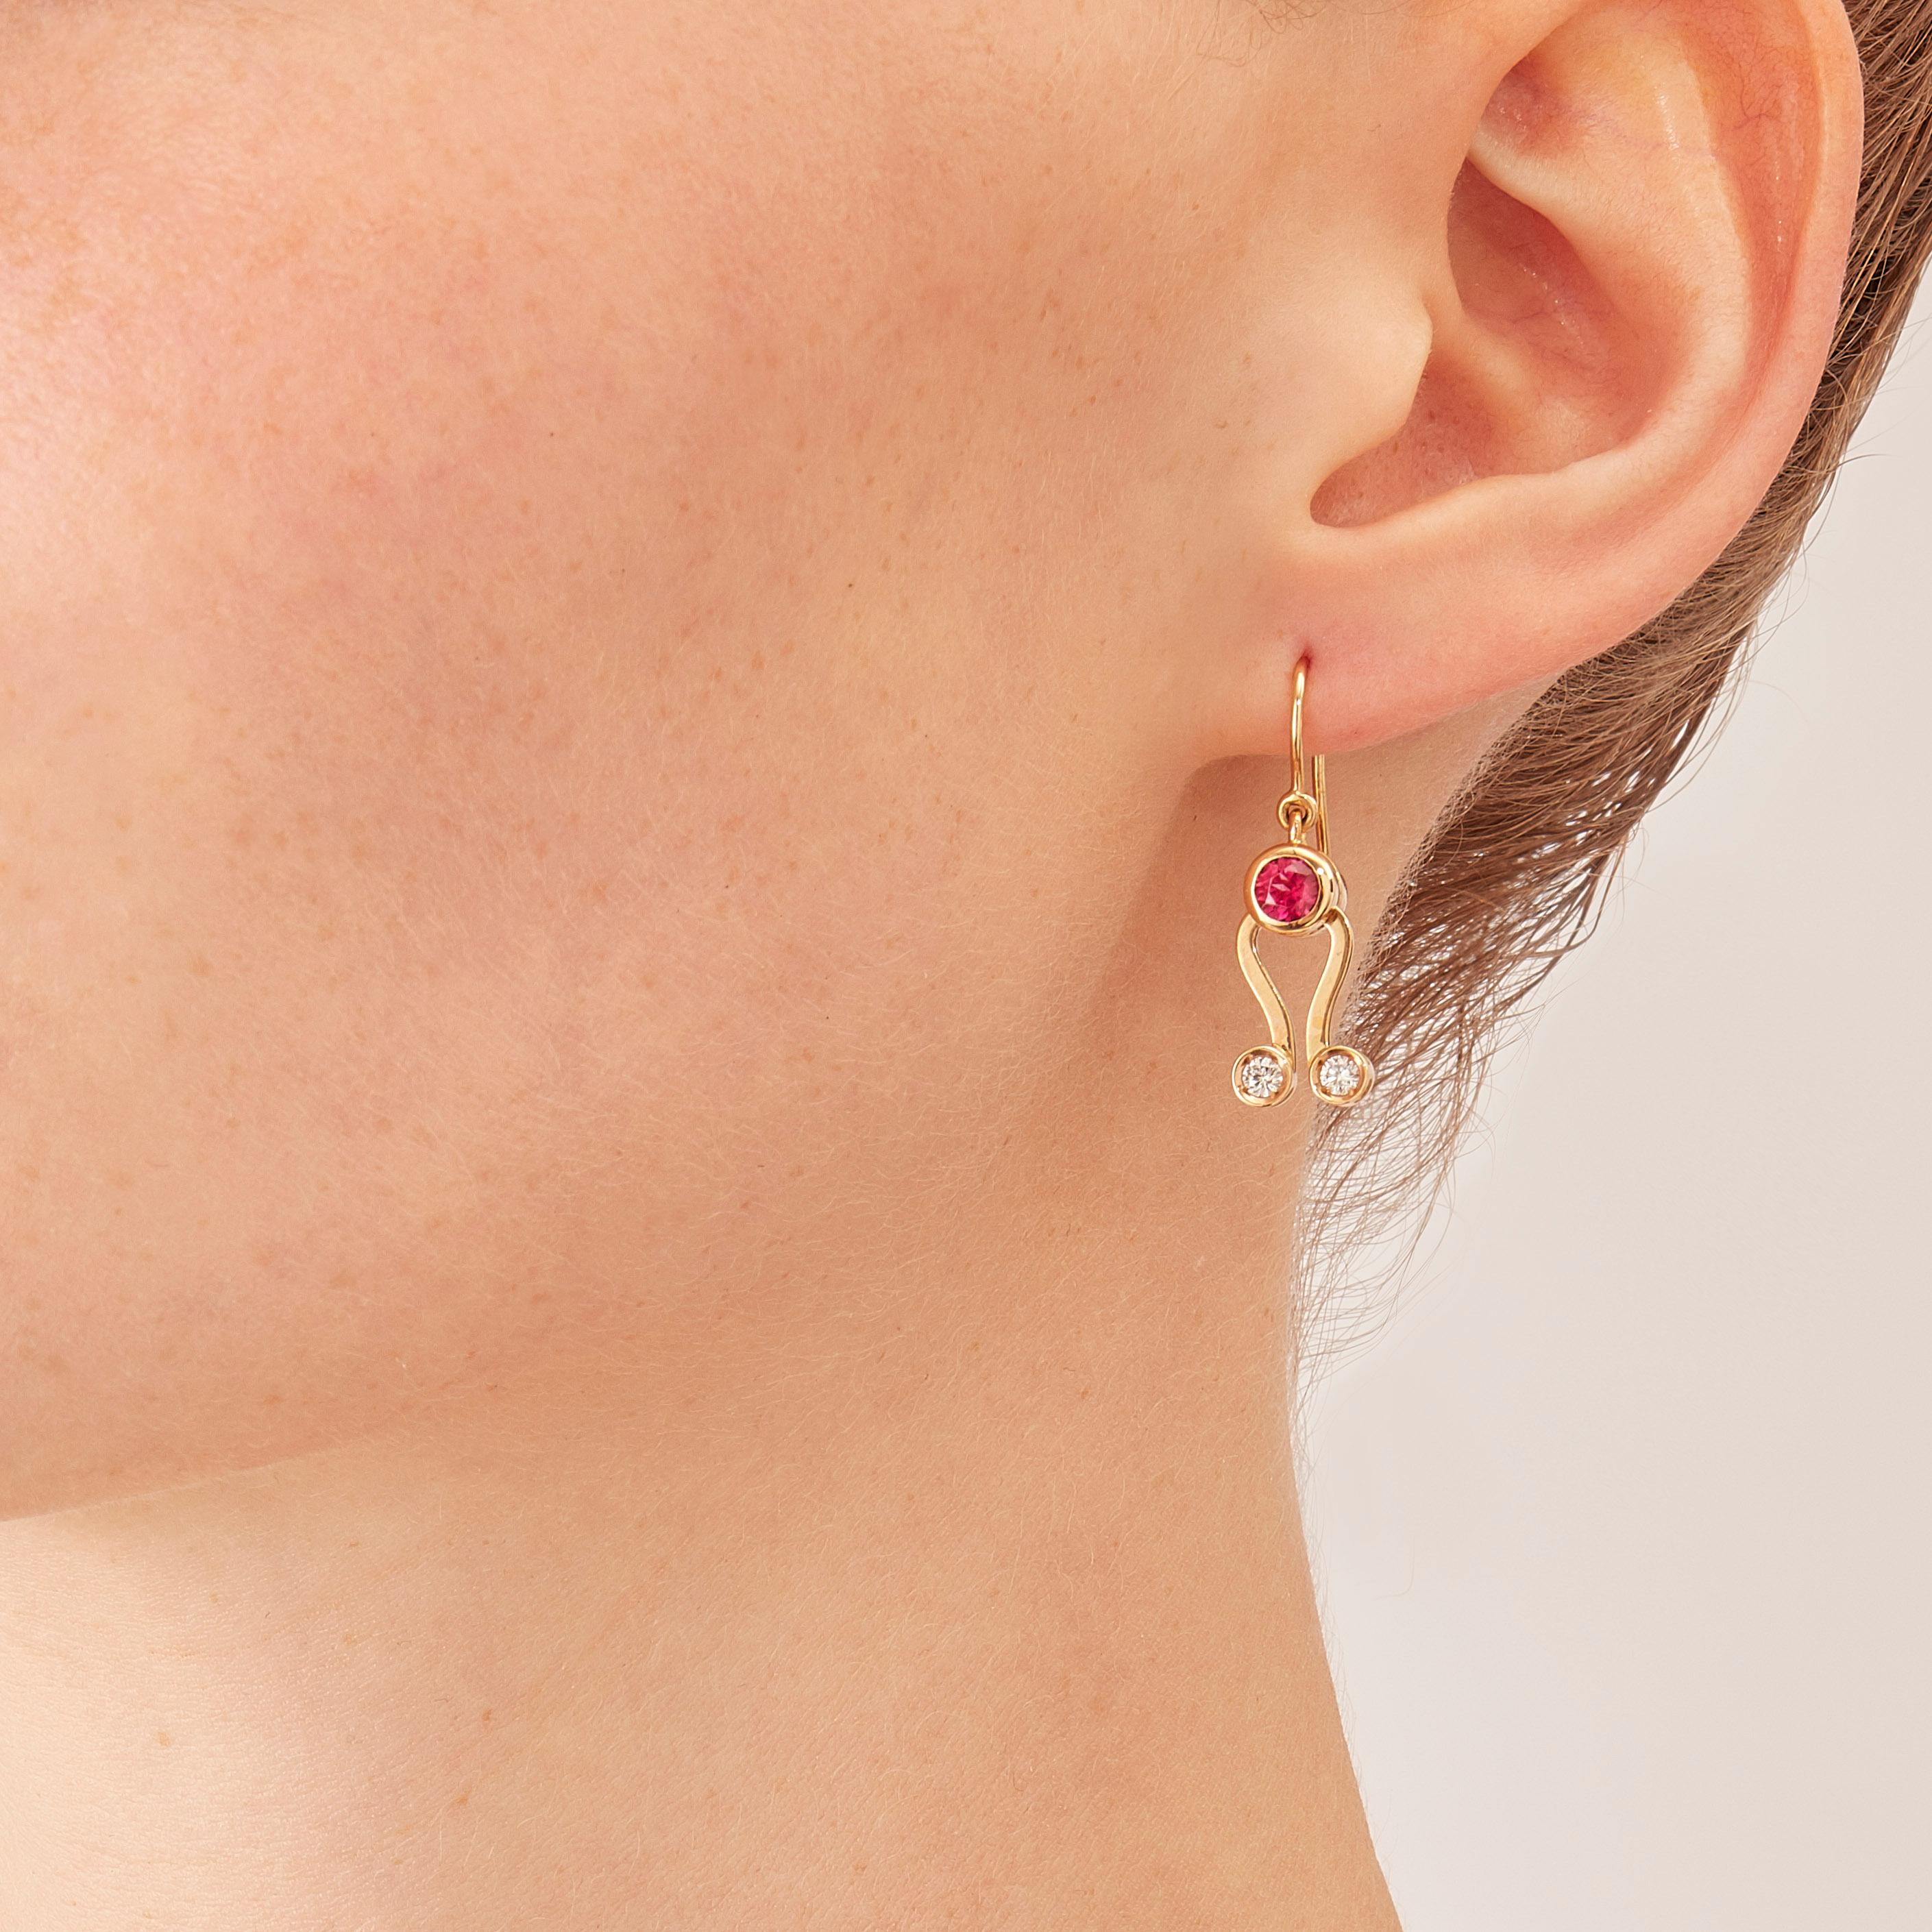 Les boucles d'oreilles Microcosmos sont en or rosé 18 carats, une couleur chaude et sophistiquée proche de l'or jaune. Ils font partie de la série Microcosmos et sont conçus comme un jeu, une construction ou un mobile aérien sophistiqué. Des formes